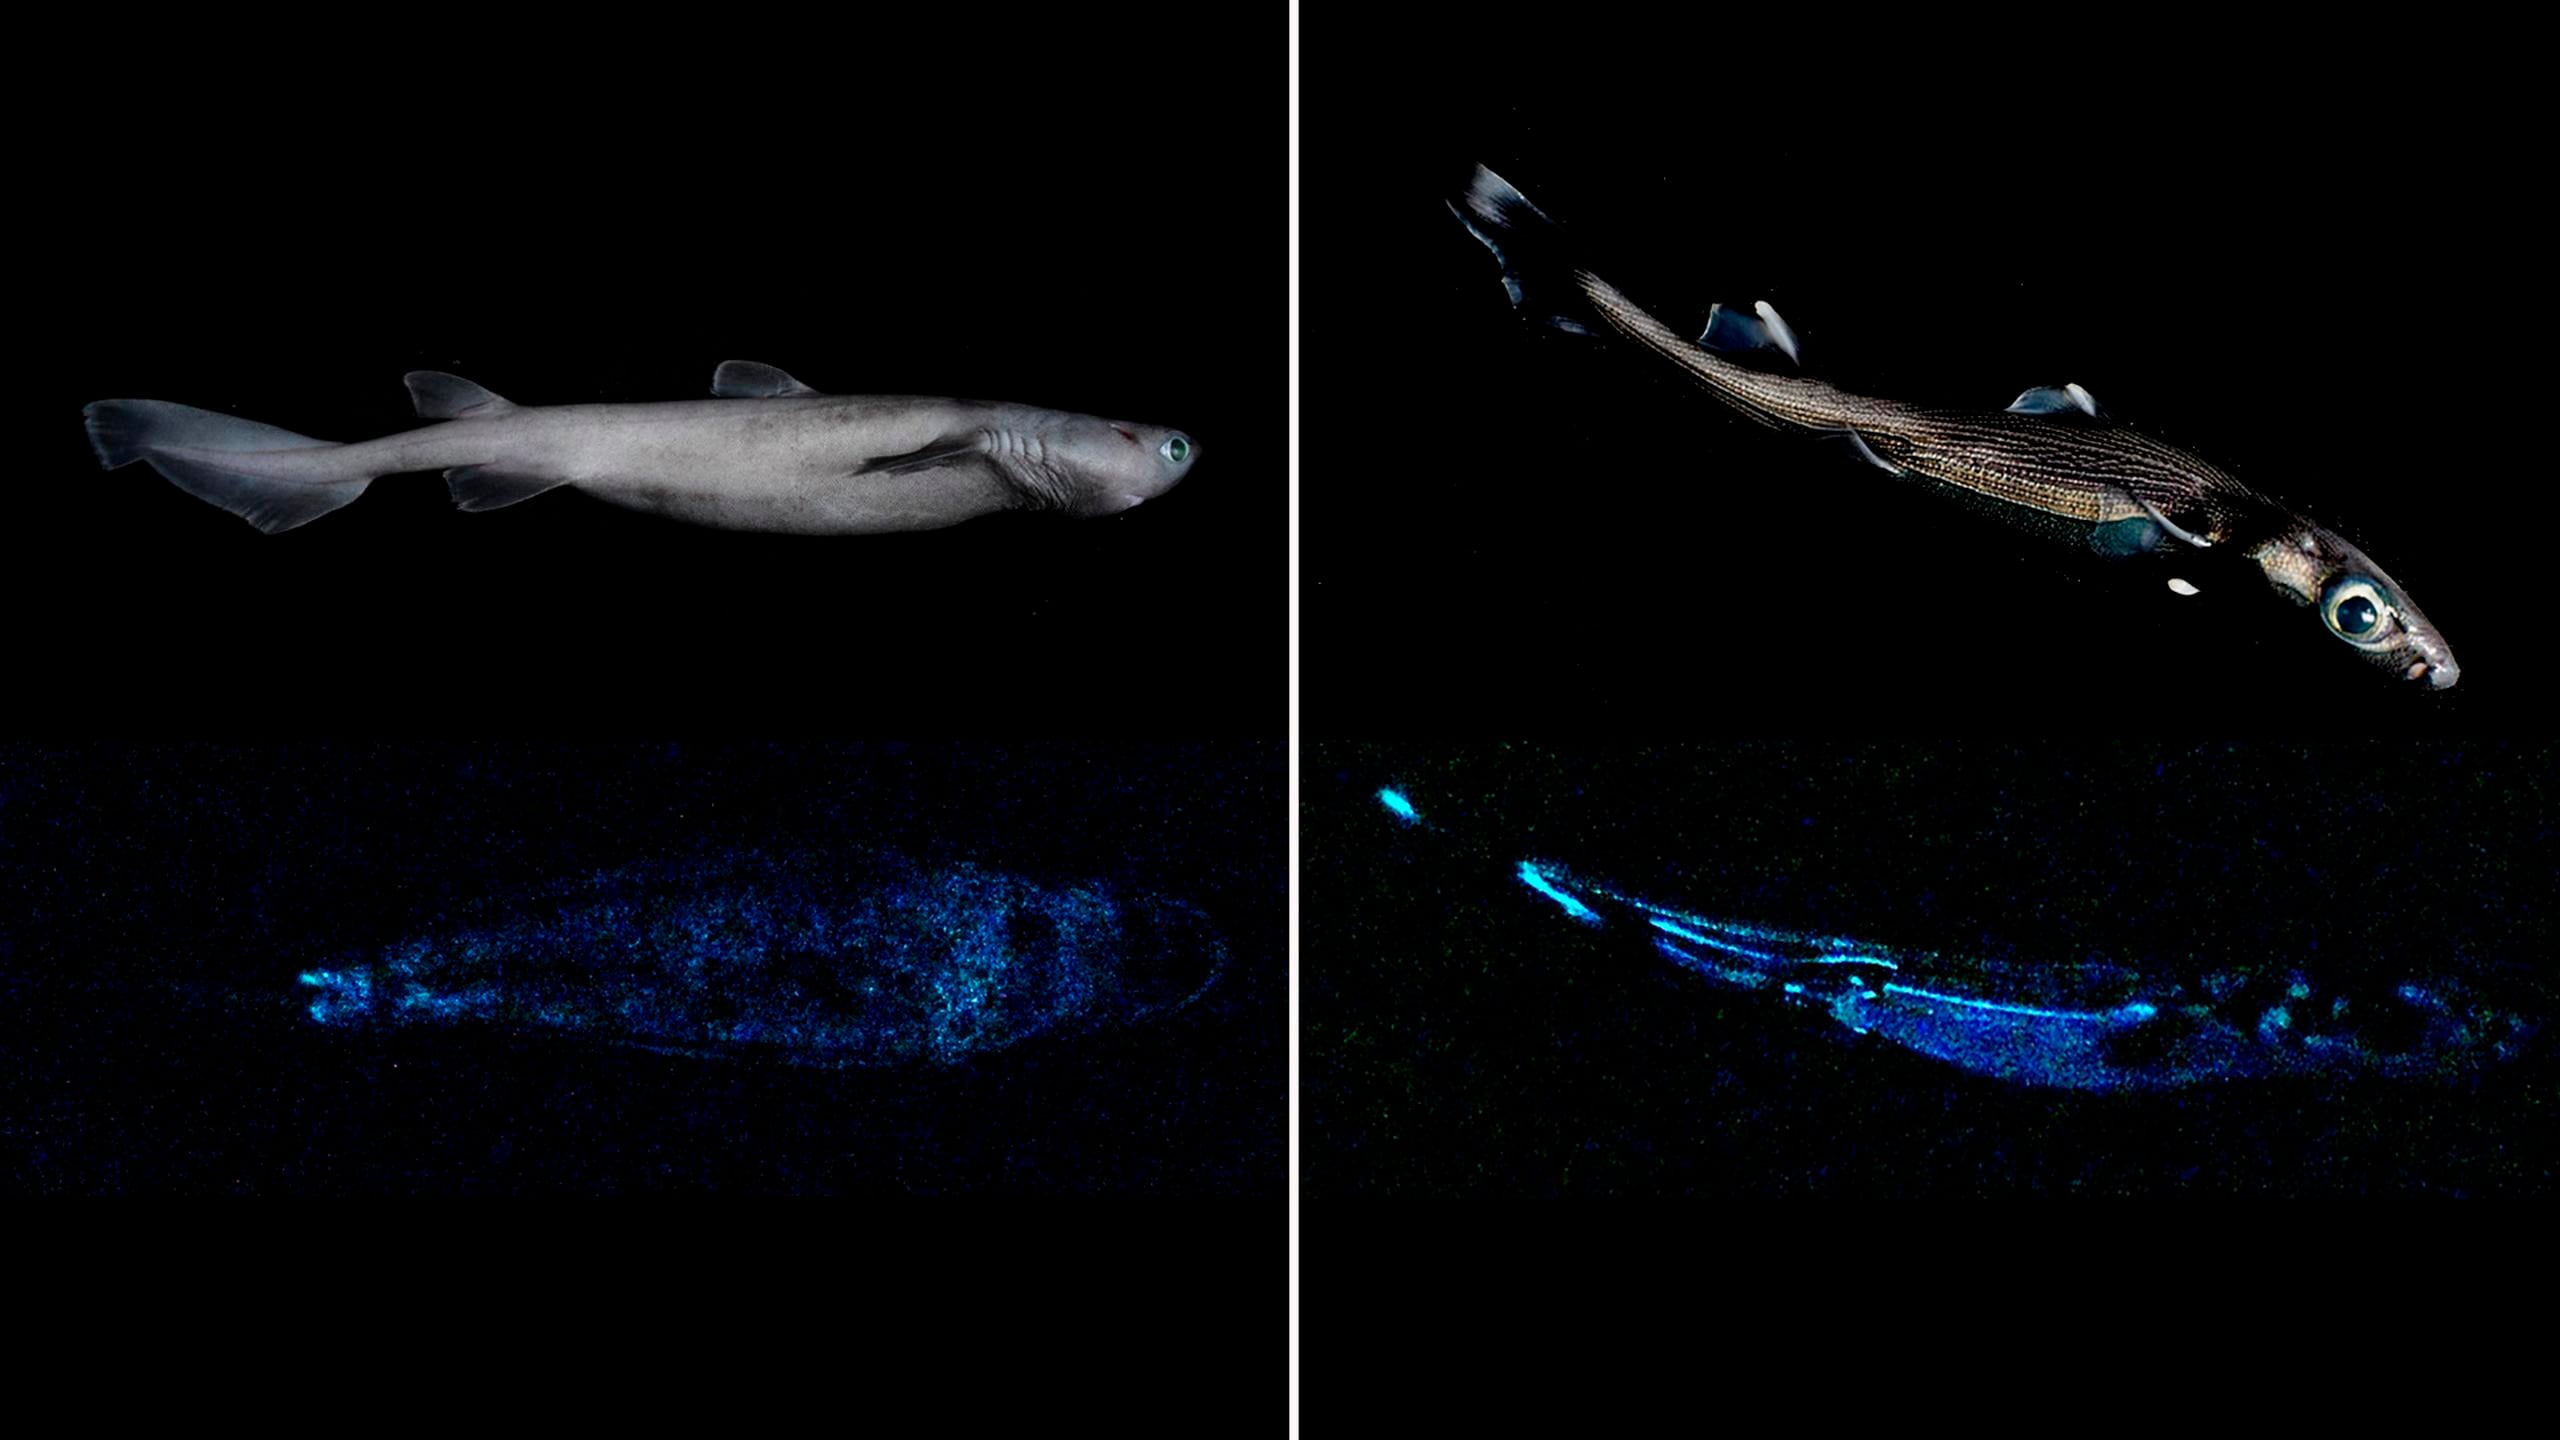 La investigación confirma por primera vez que este tiburón carocho (Dalatias licha), así como otras dos especies (Etmopterus lucifer y Etmopterus granulosus) que habitan las profundidades de las aguas neozelandesas, y que ya eran conocidas, son capaces de producir una luz visible a través de reacciones bioquímicas.